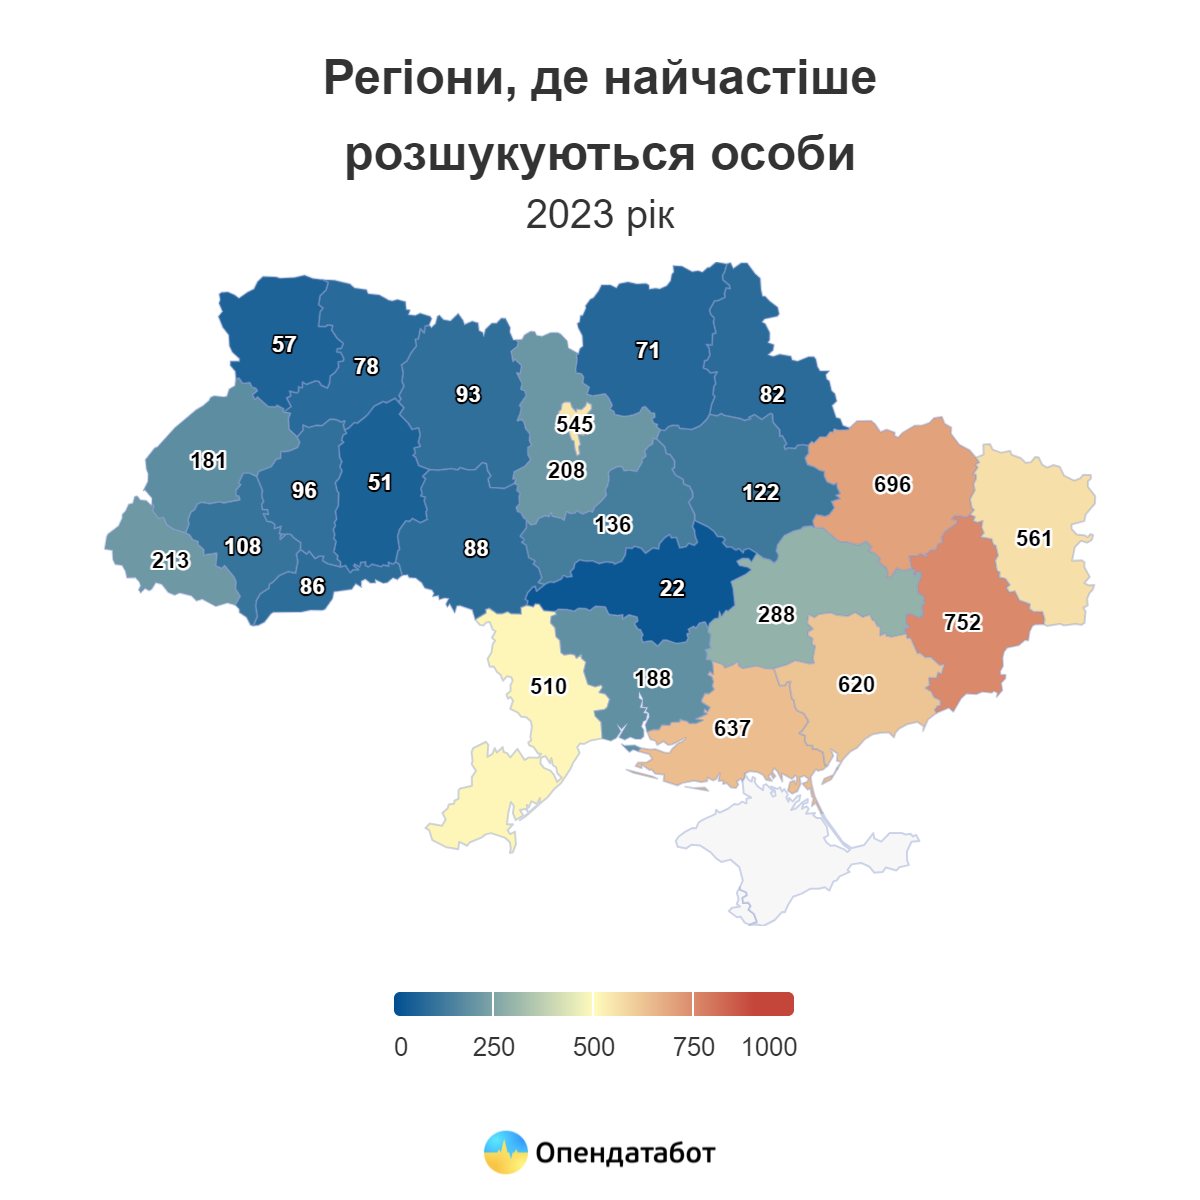 Інфографіка кількості розшуку по областям України